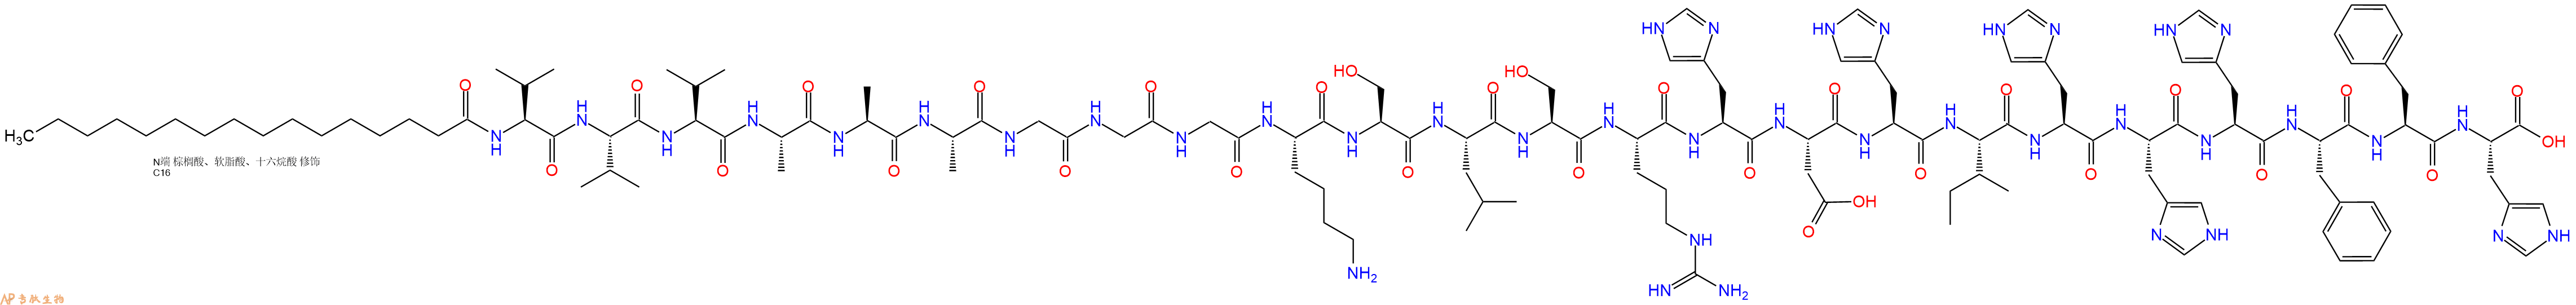 专肽生物产品棕榈酸-VVVAAAGGGKSLSRHDHIHHHFFH